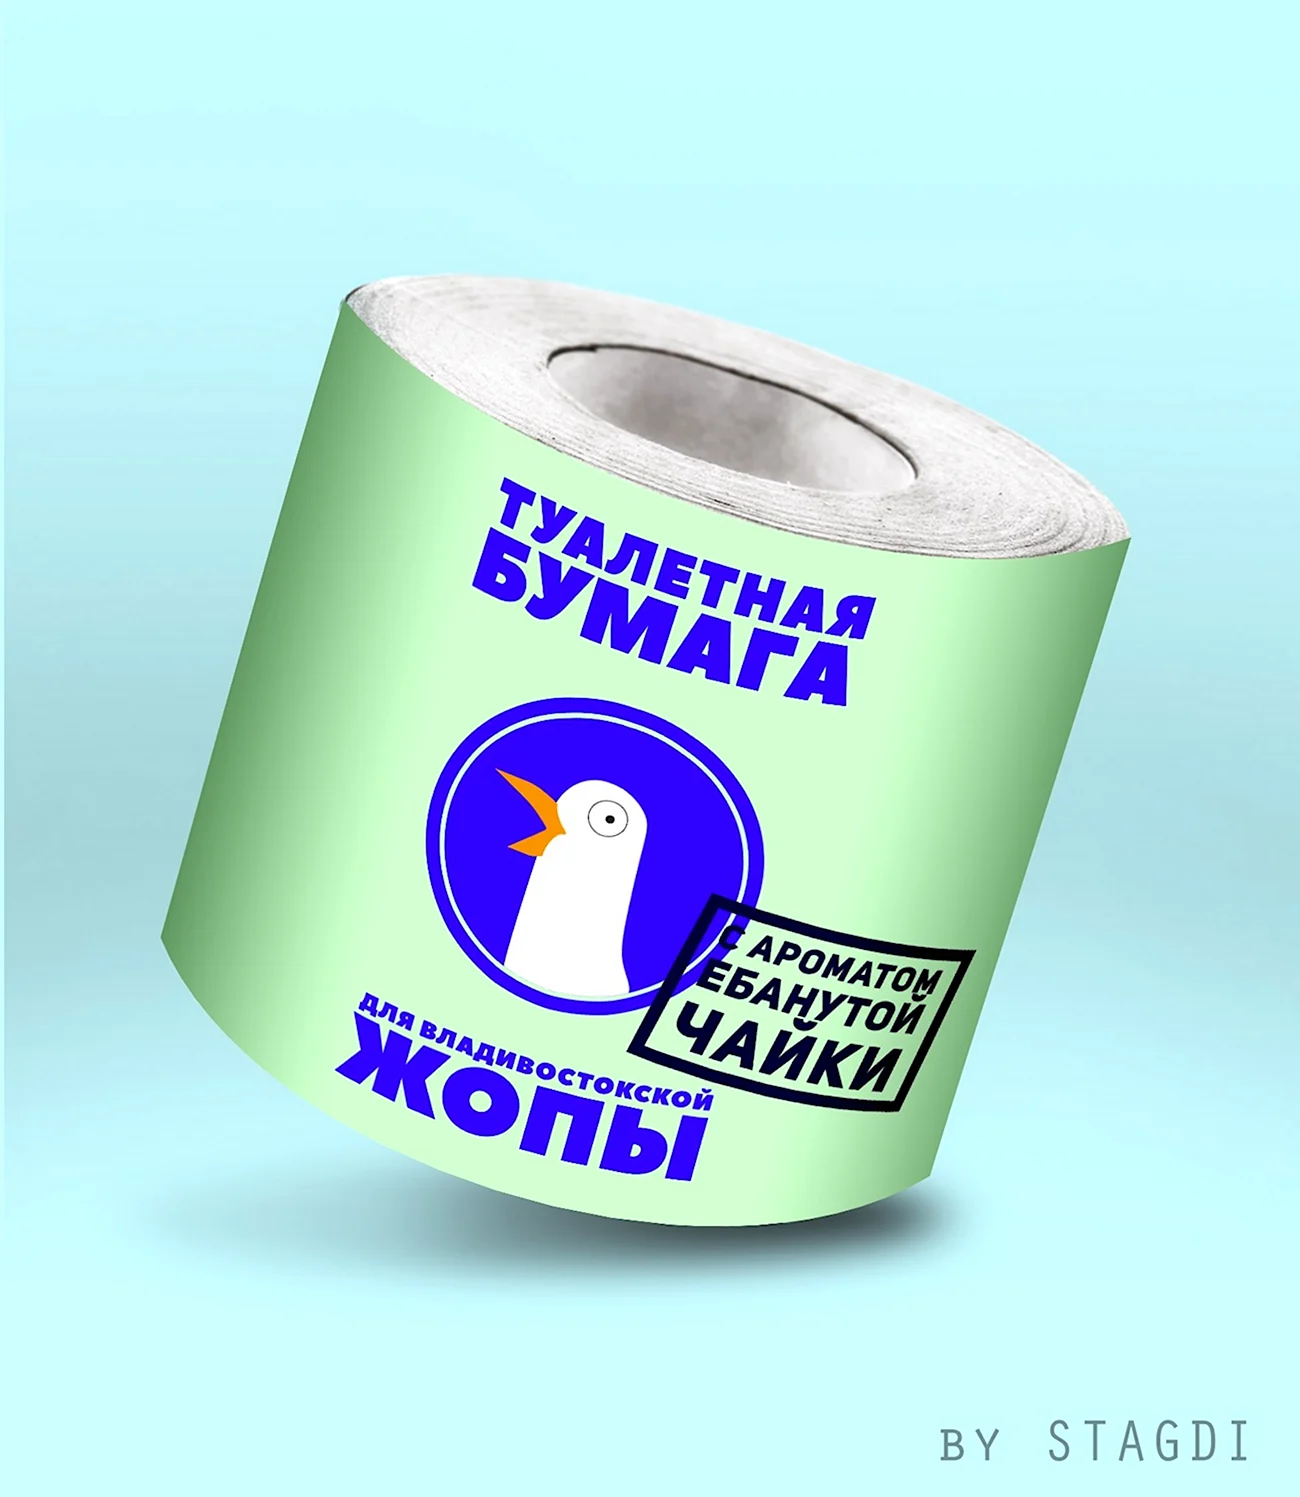 Российская туалетная бумага. Прикольная картинка